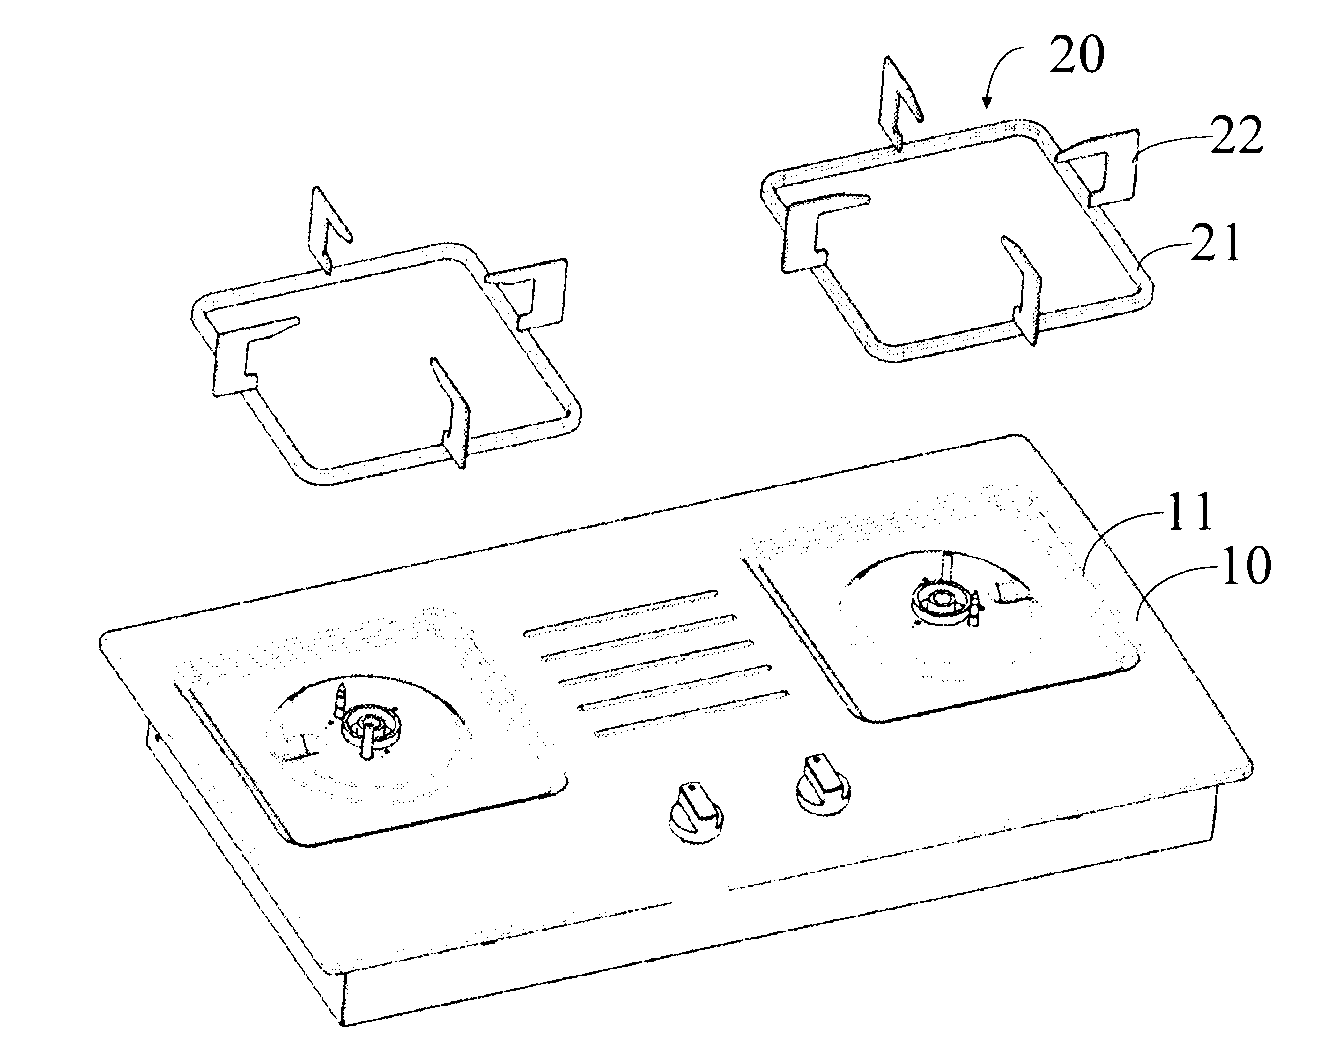 Gas-stove, gas-stove panel, and pot racks